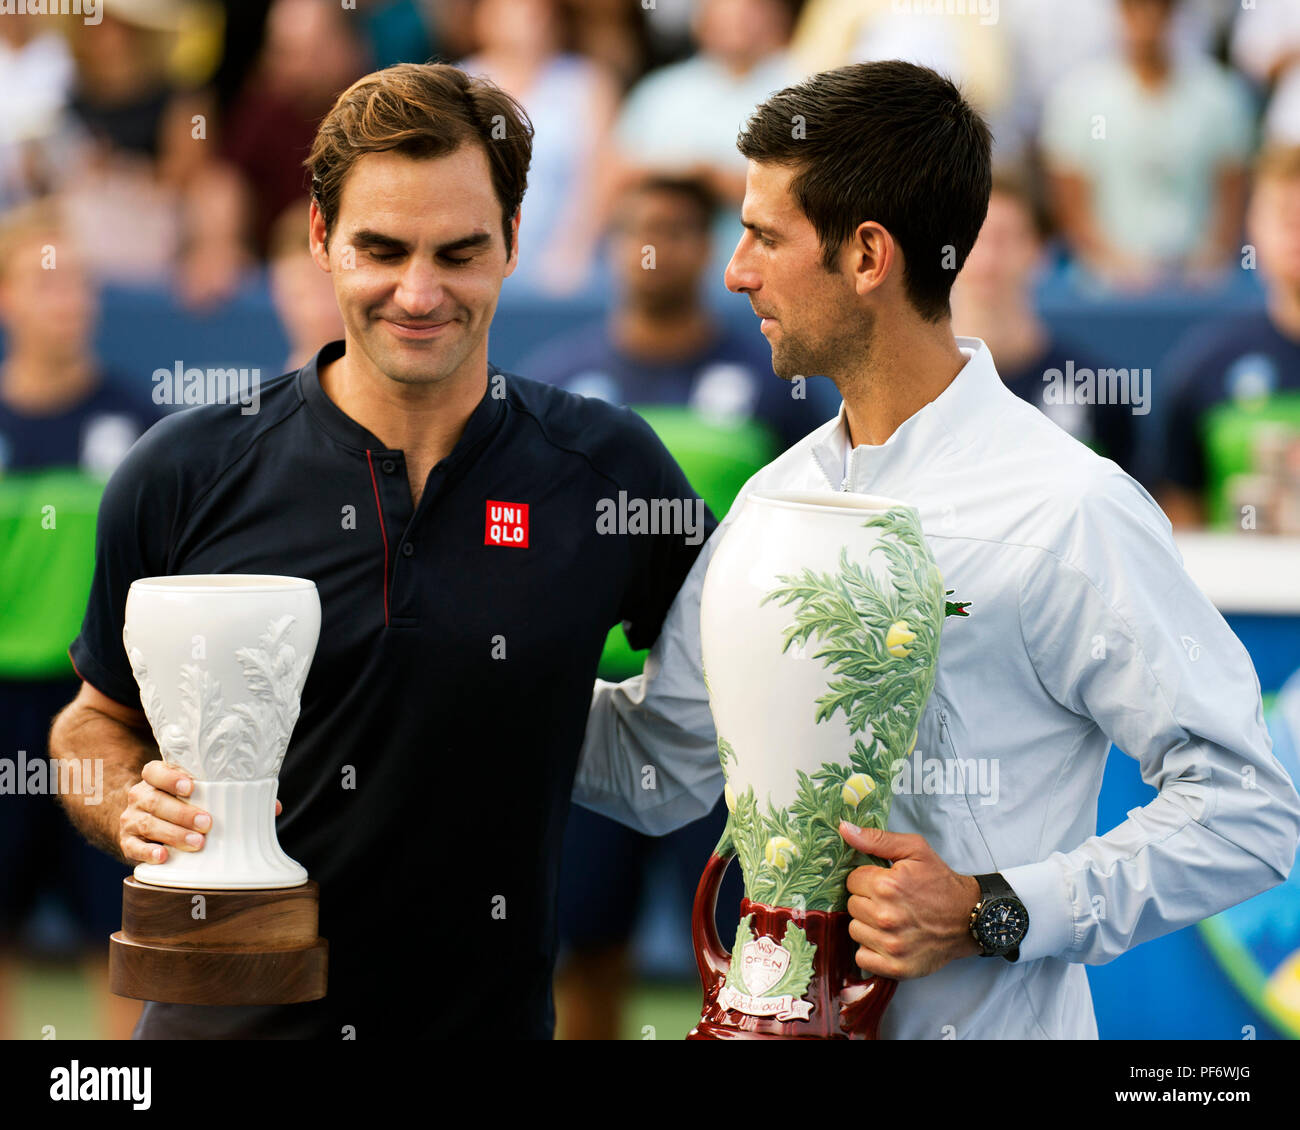 Mason, Ohio, USA. 19 août 2018 : Roger Federer (SUI) et Novak Djokovic (SRB) au cours de la cérémonie de remise des prix au sud de l'Ouest Ouvrir à Mason, Ohio, USA. Brent Clark/Alamy Live News Banque D'Images